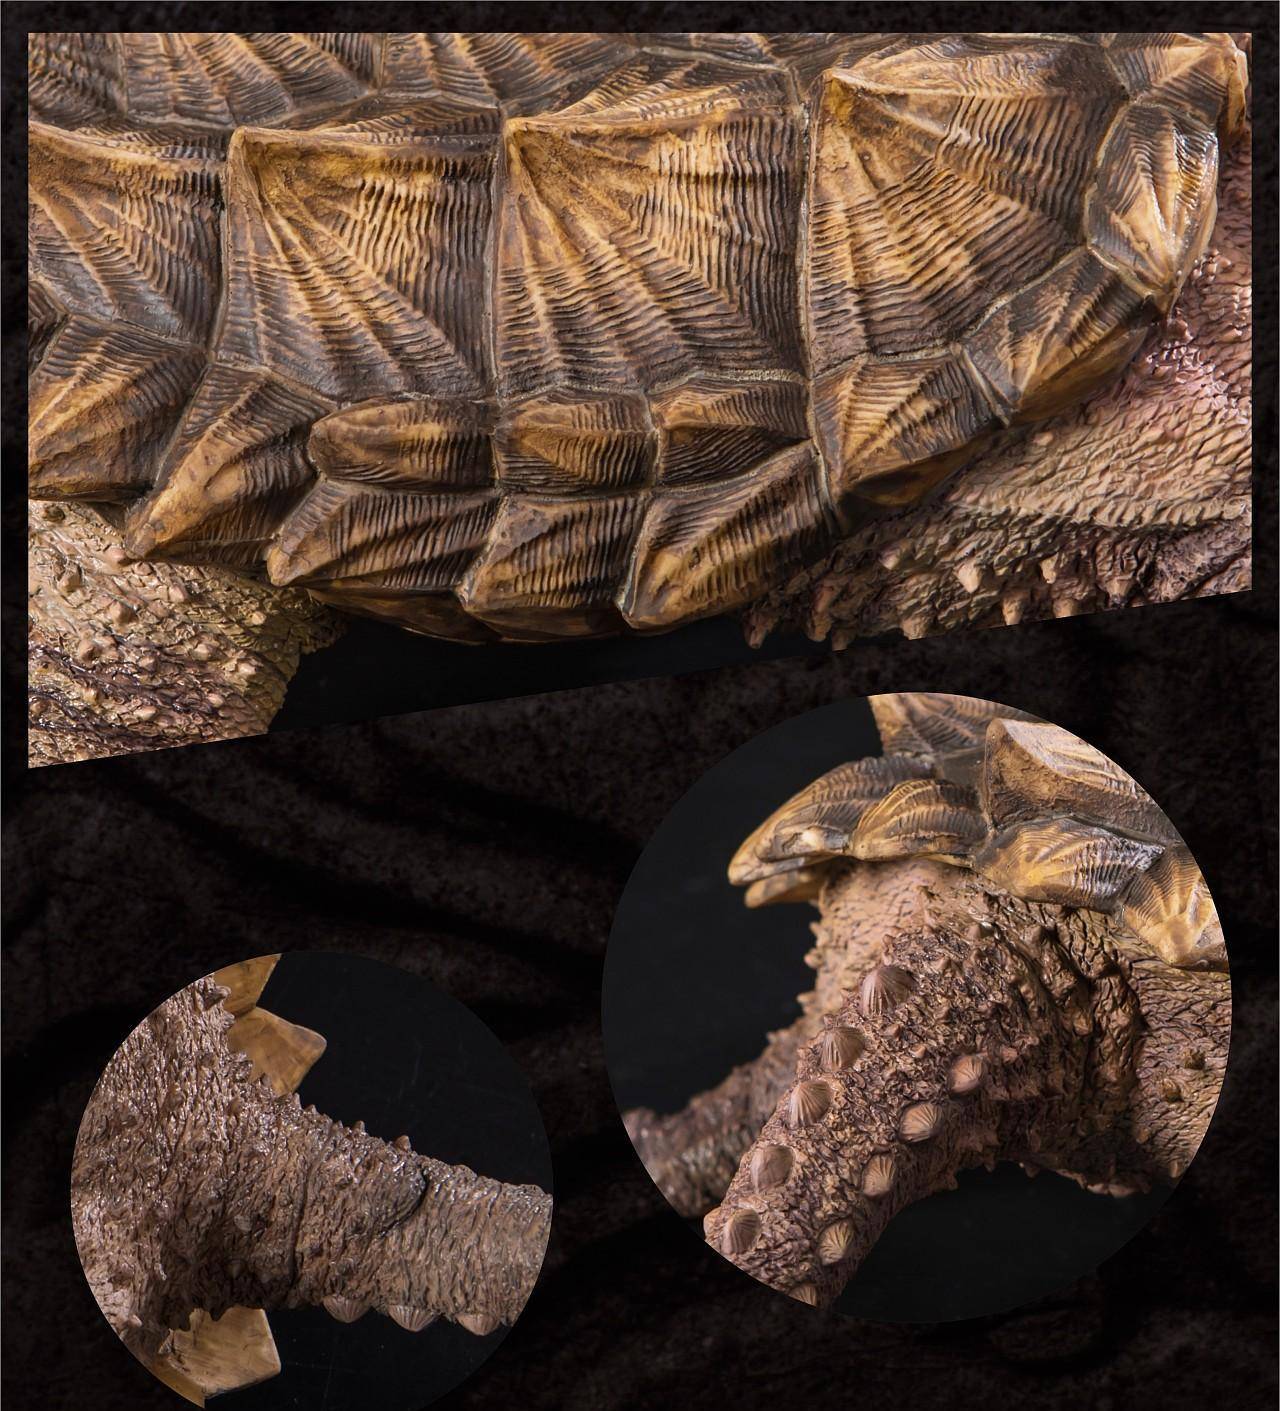 鳄龟舌头像虫子图片